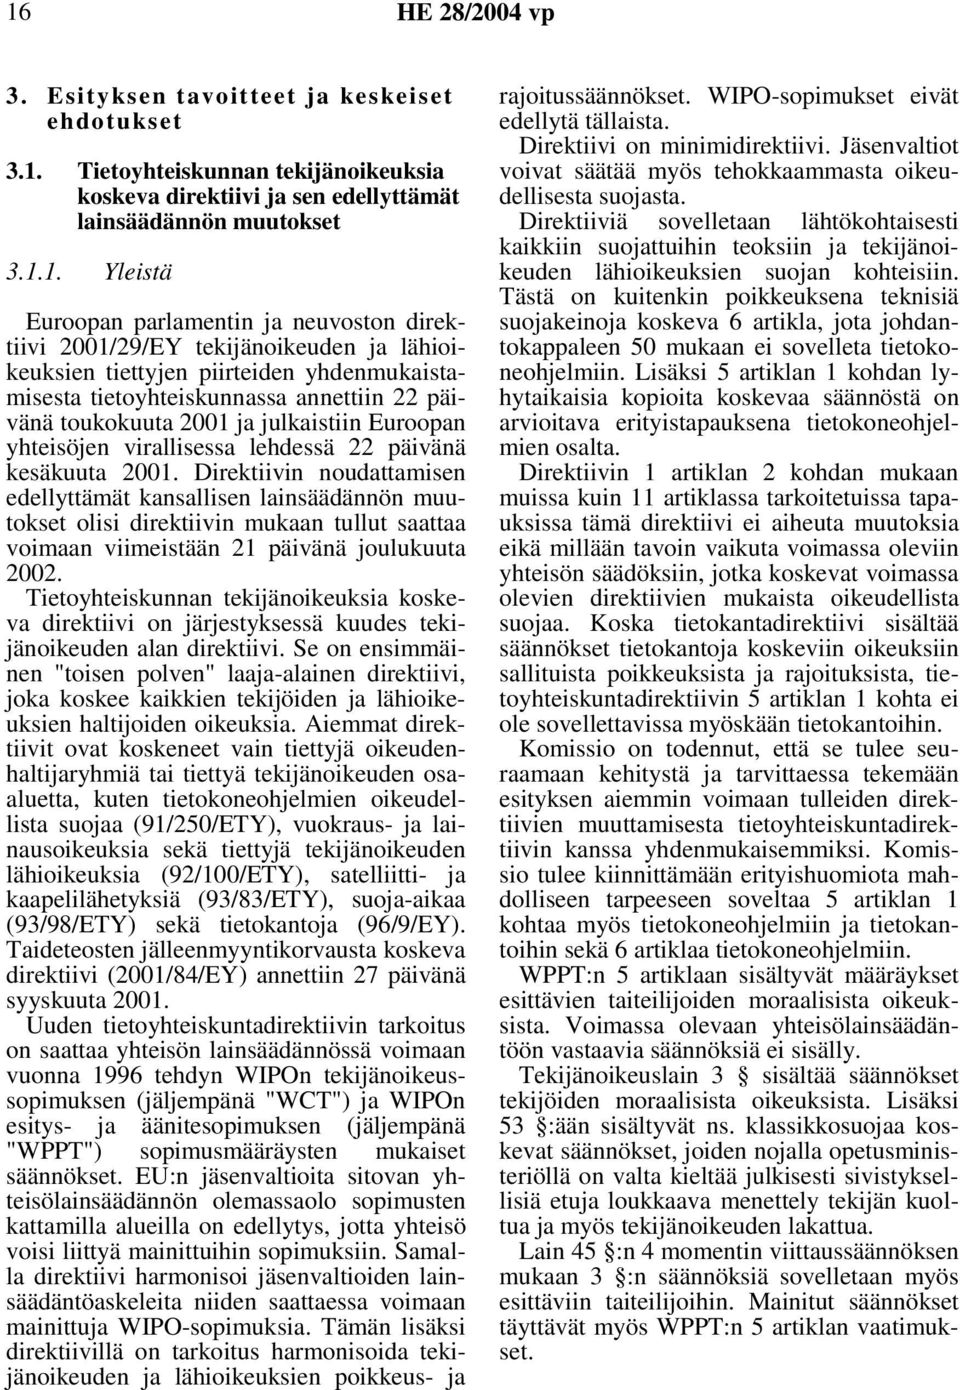 Euroopan yhteisöjen virallisessa lehdessä 22 päivänä kesäkuuta 2001.